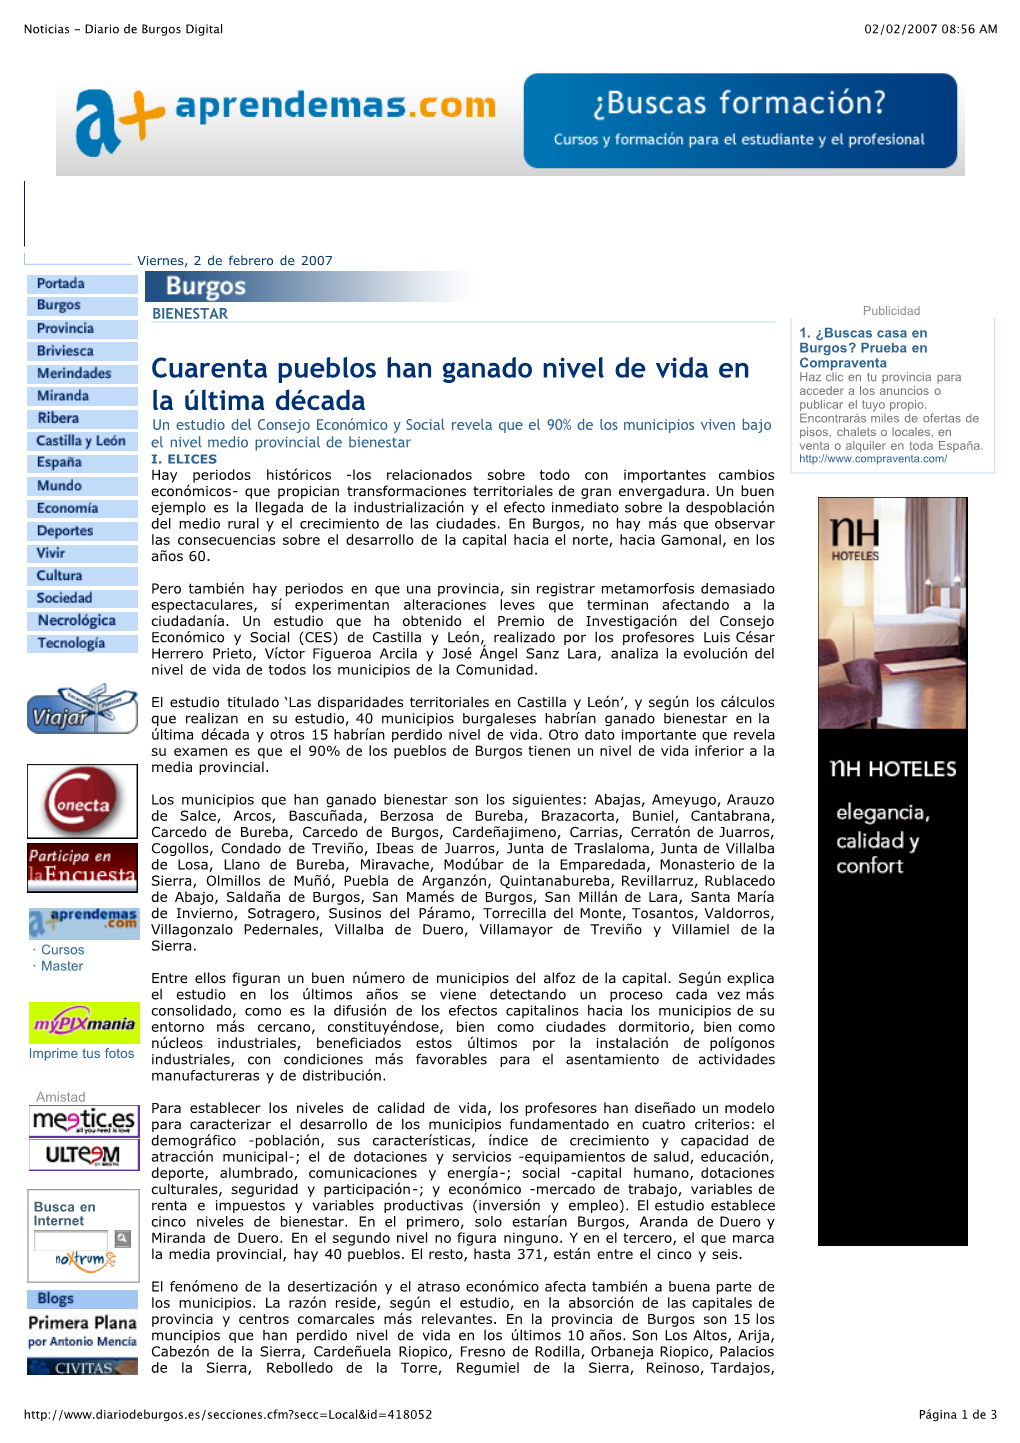 Noticias - Diario De Burgos Digital 02/02/2007 08:56 AM